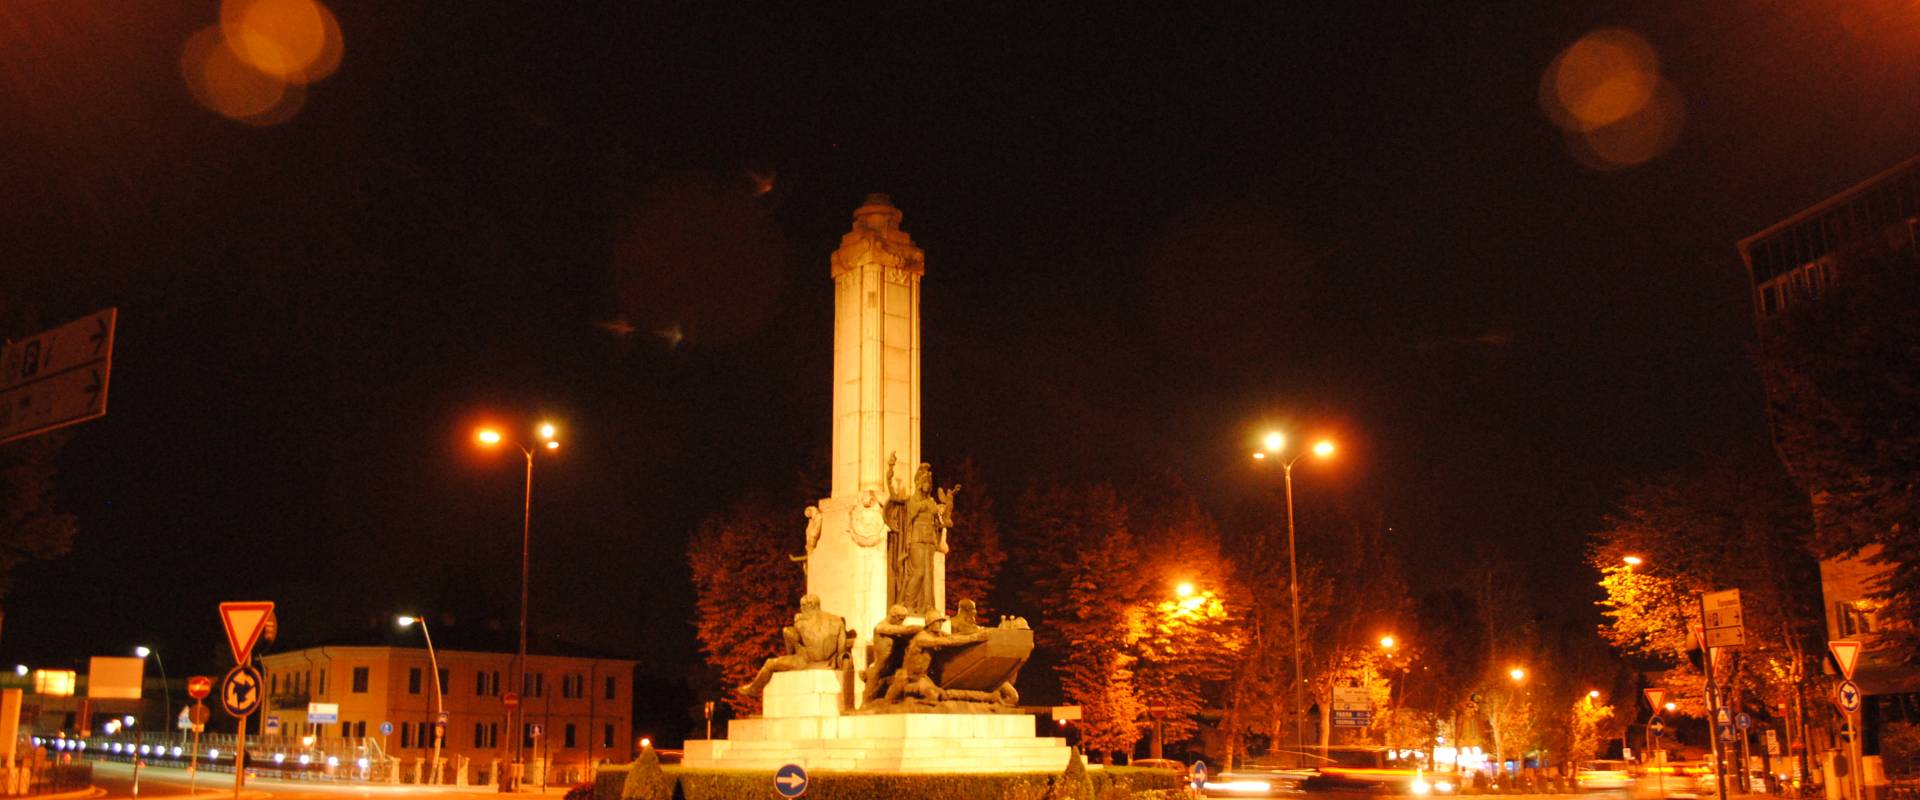 Monumento ai pontieri in notturna foto di Phabius